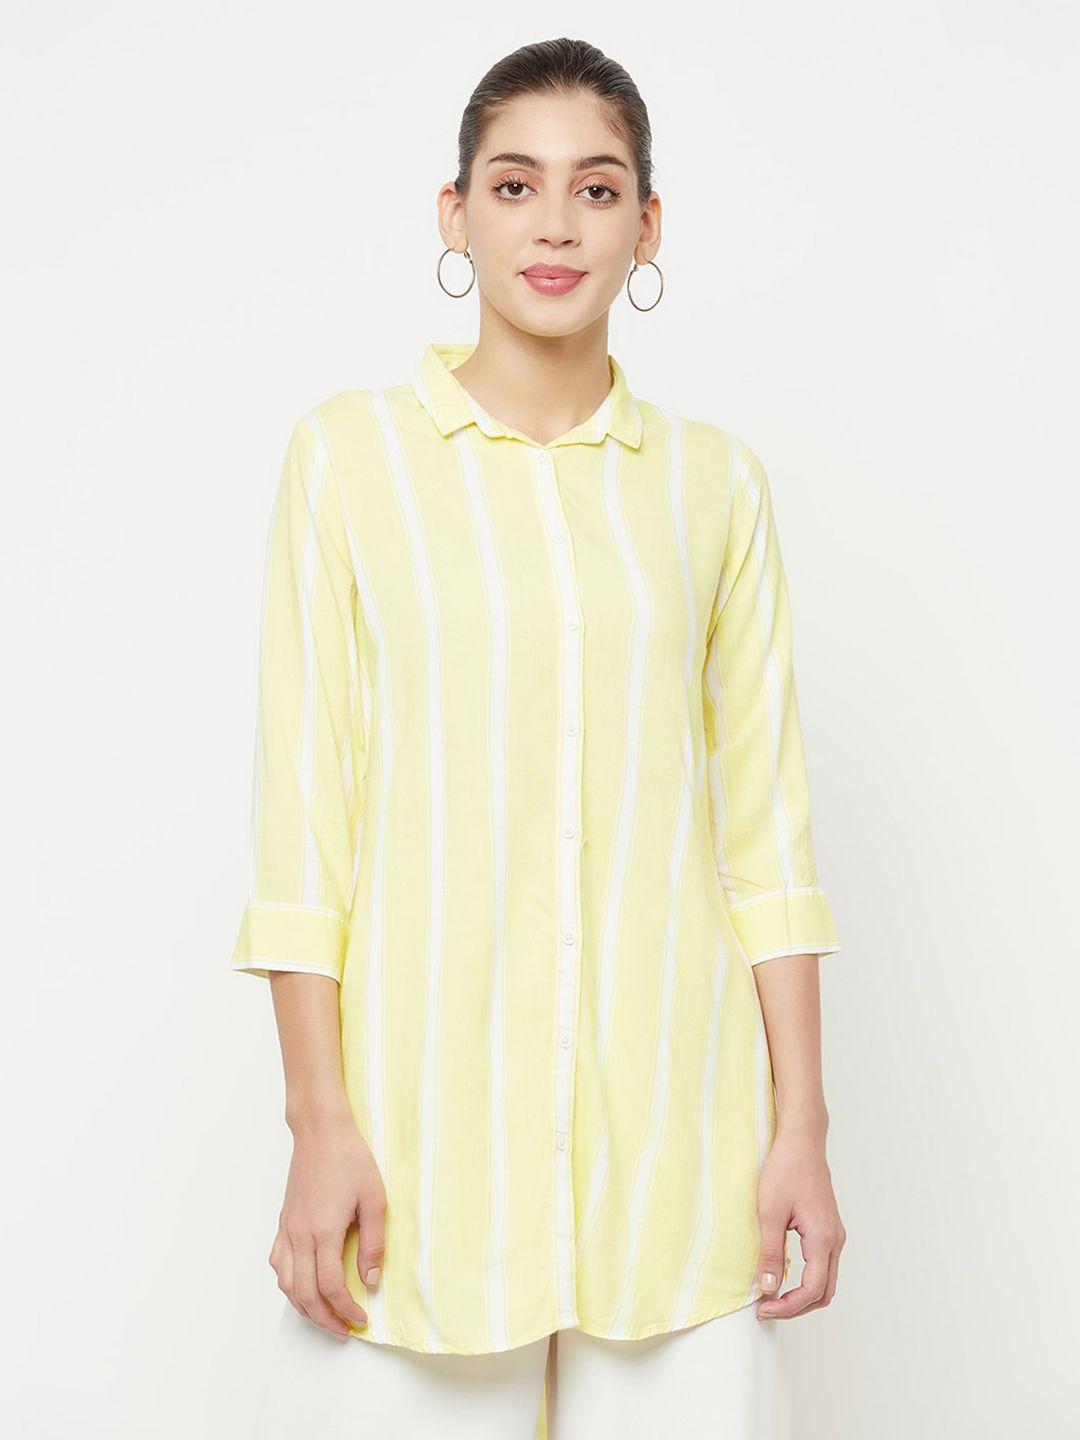 crimsoune club women yellow striped casual shirt